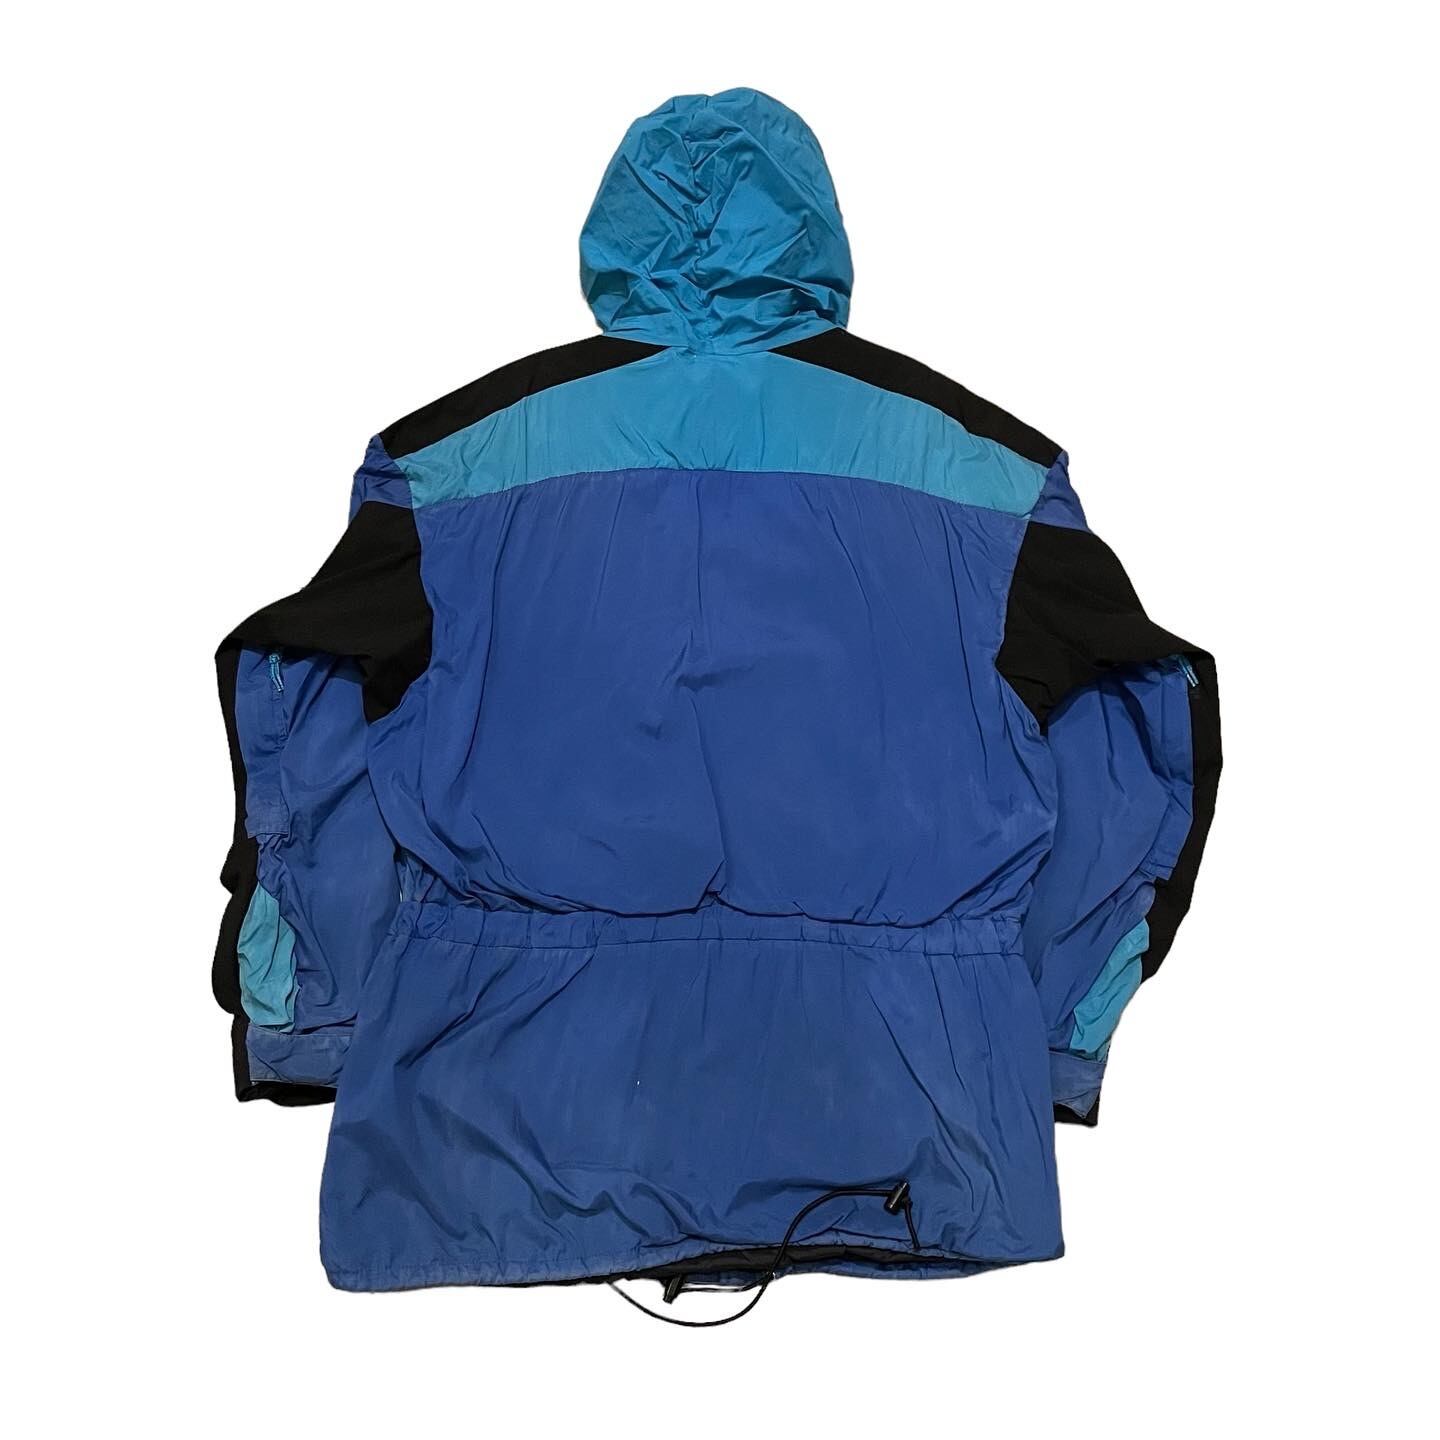 90s NIKE zip up mountain jacket black